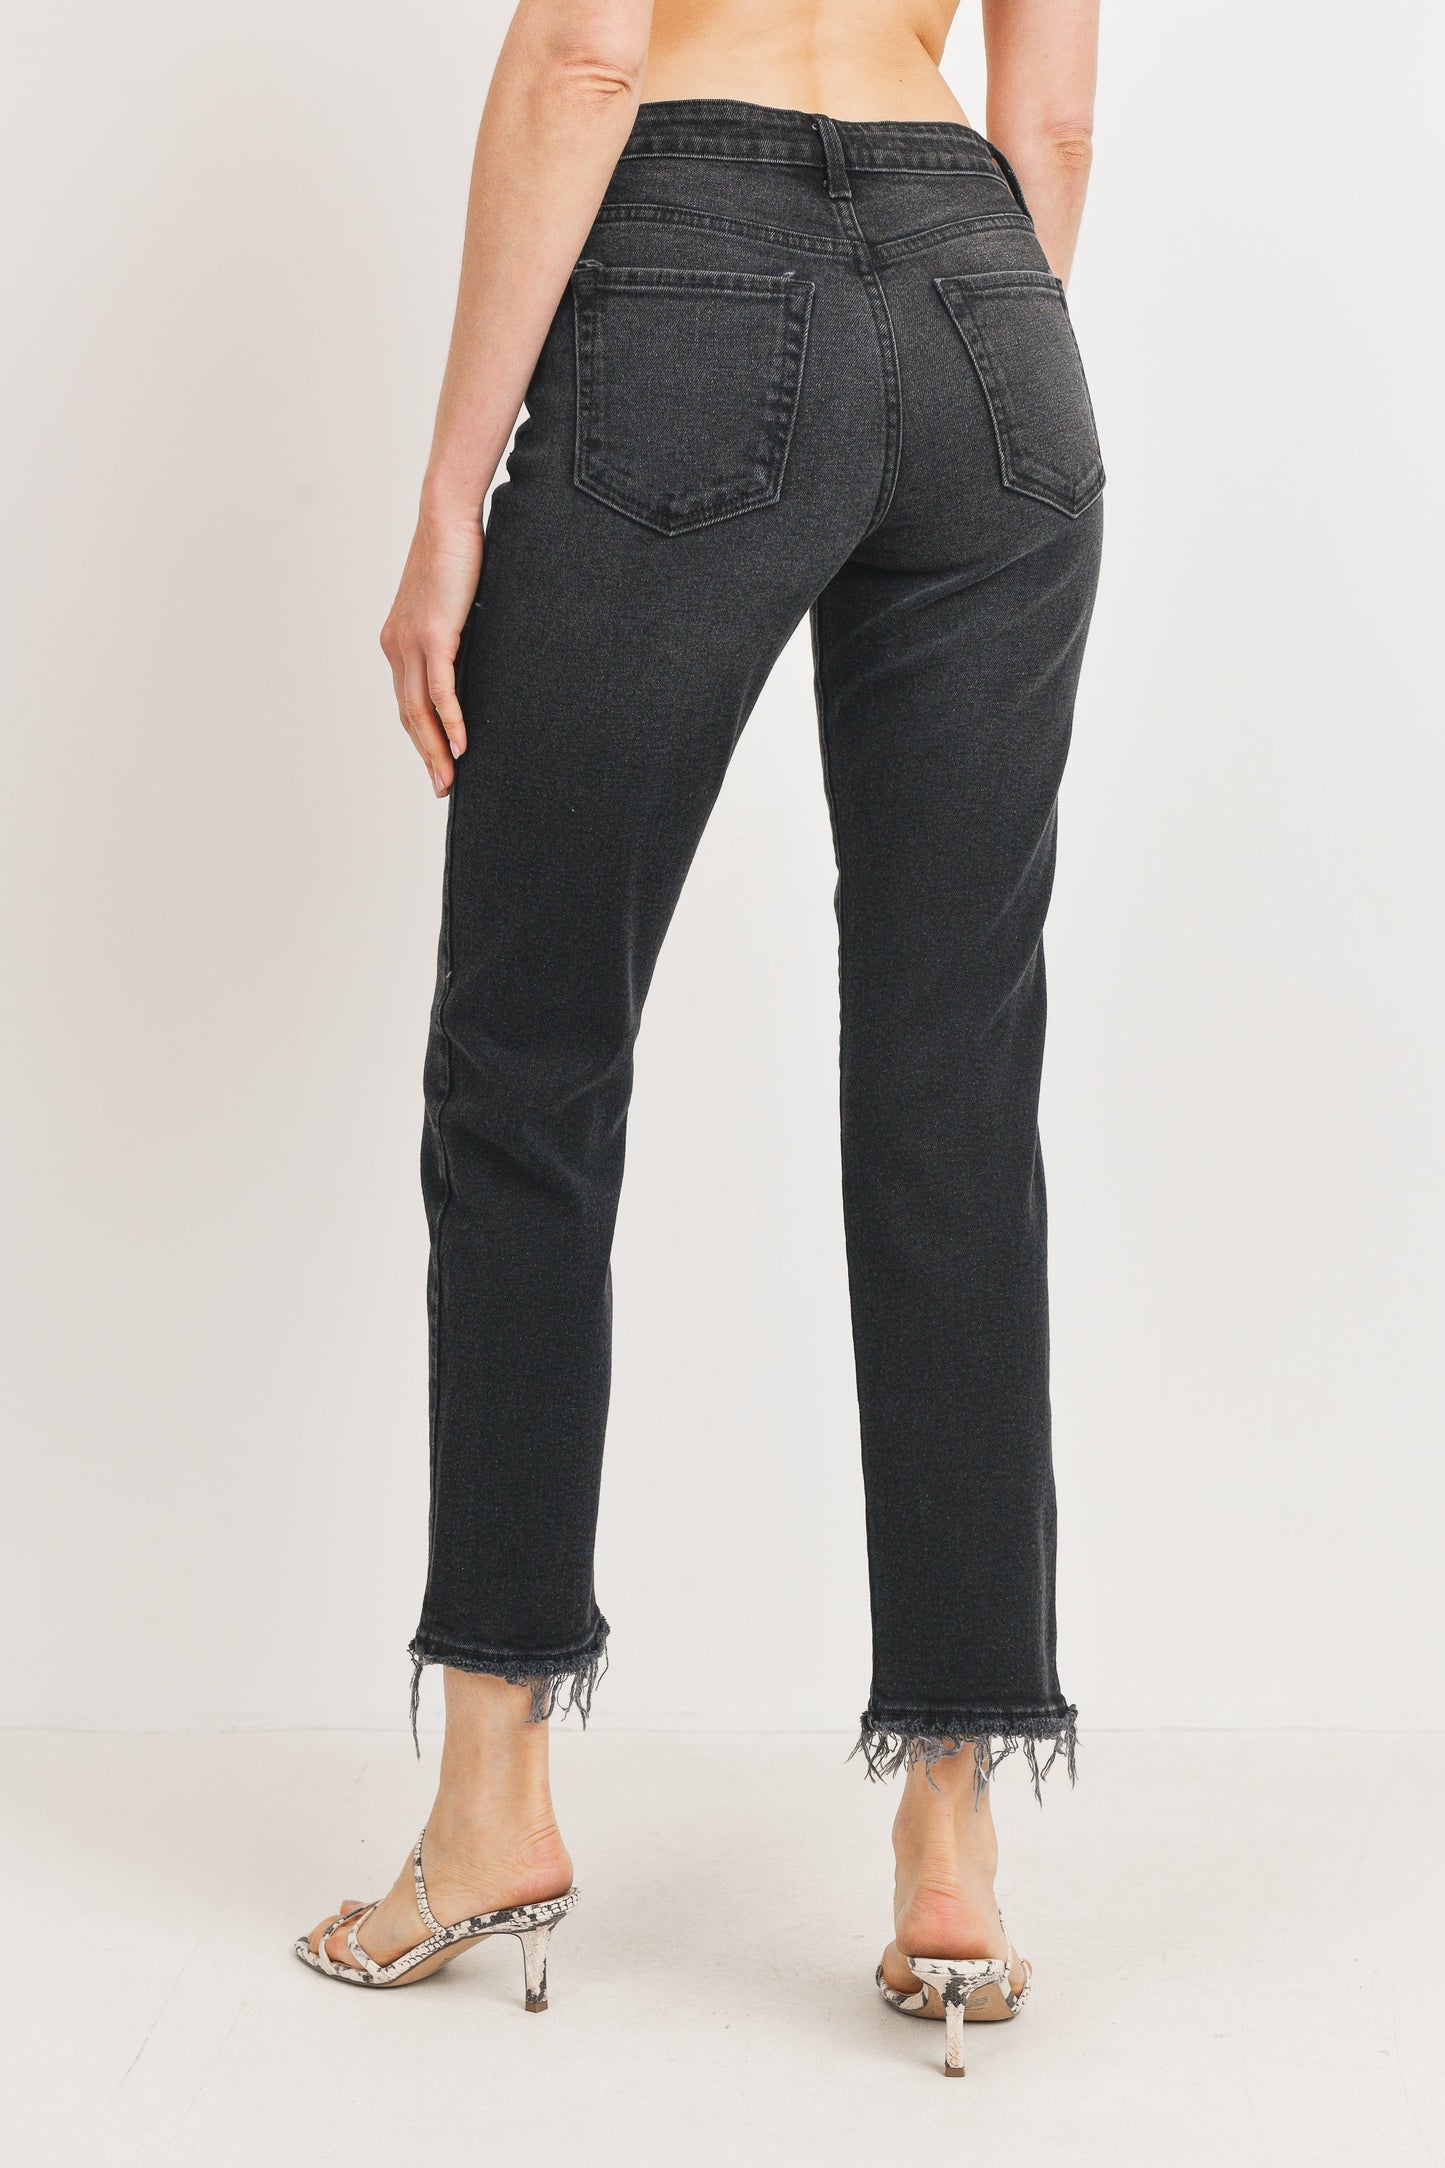 Just Black Denim: Sleek High-Waisted Straight Leg Jeans for Women